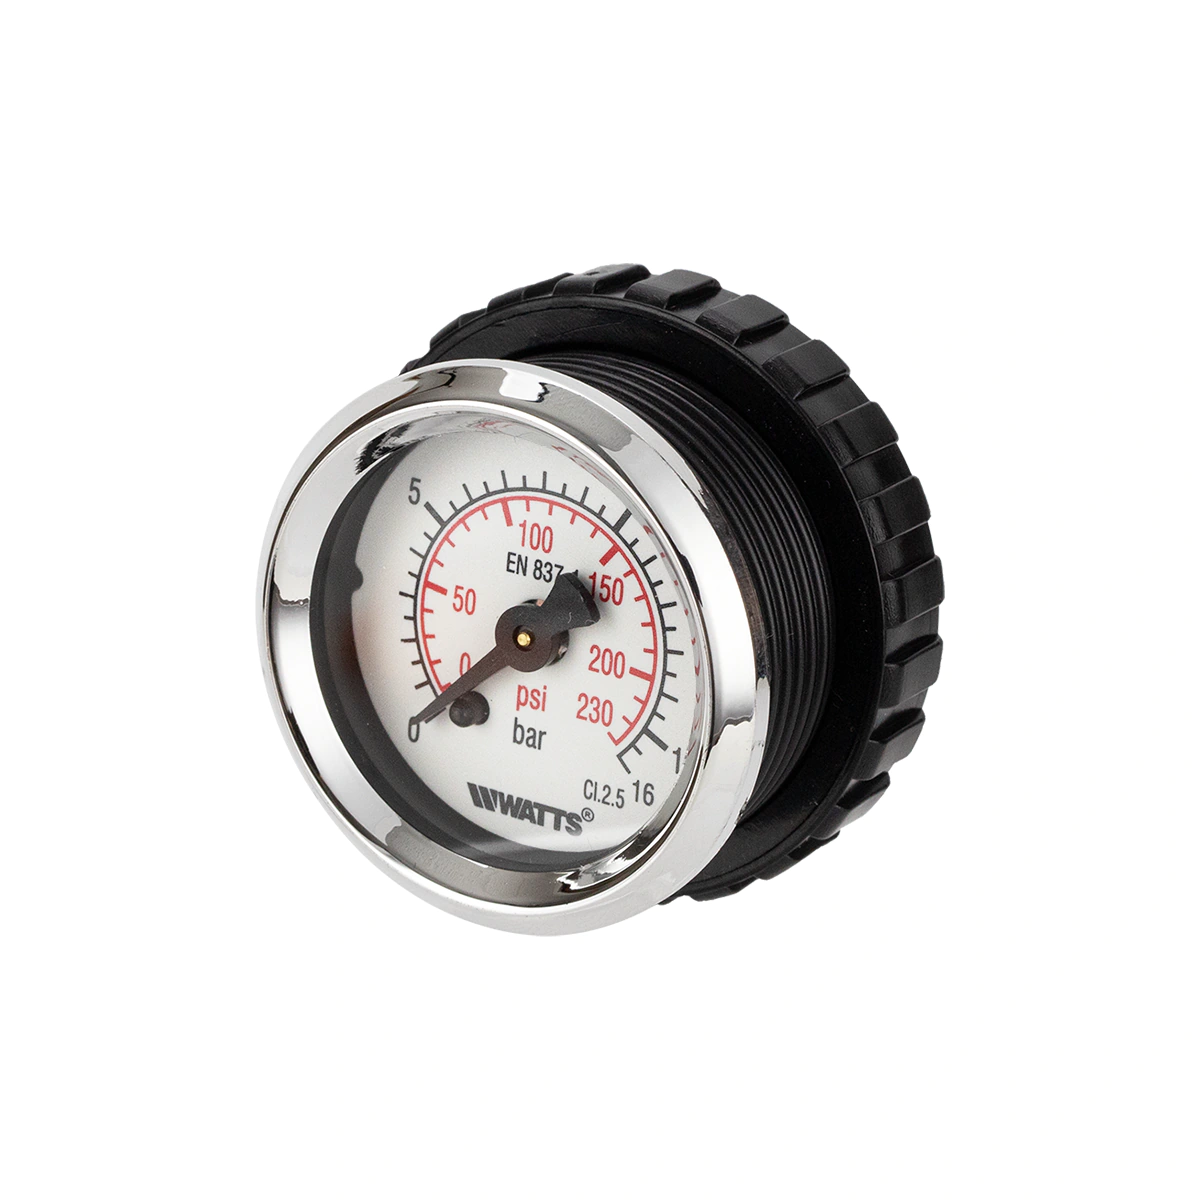 Beszerelhető nyomásmérő óra - manométer - feszmérő 0-16 bar 1/8" (horizontális)